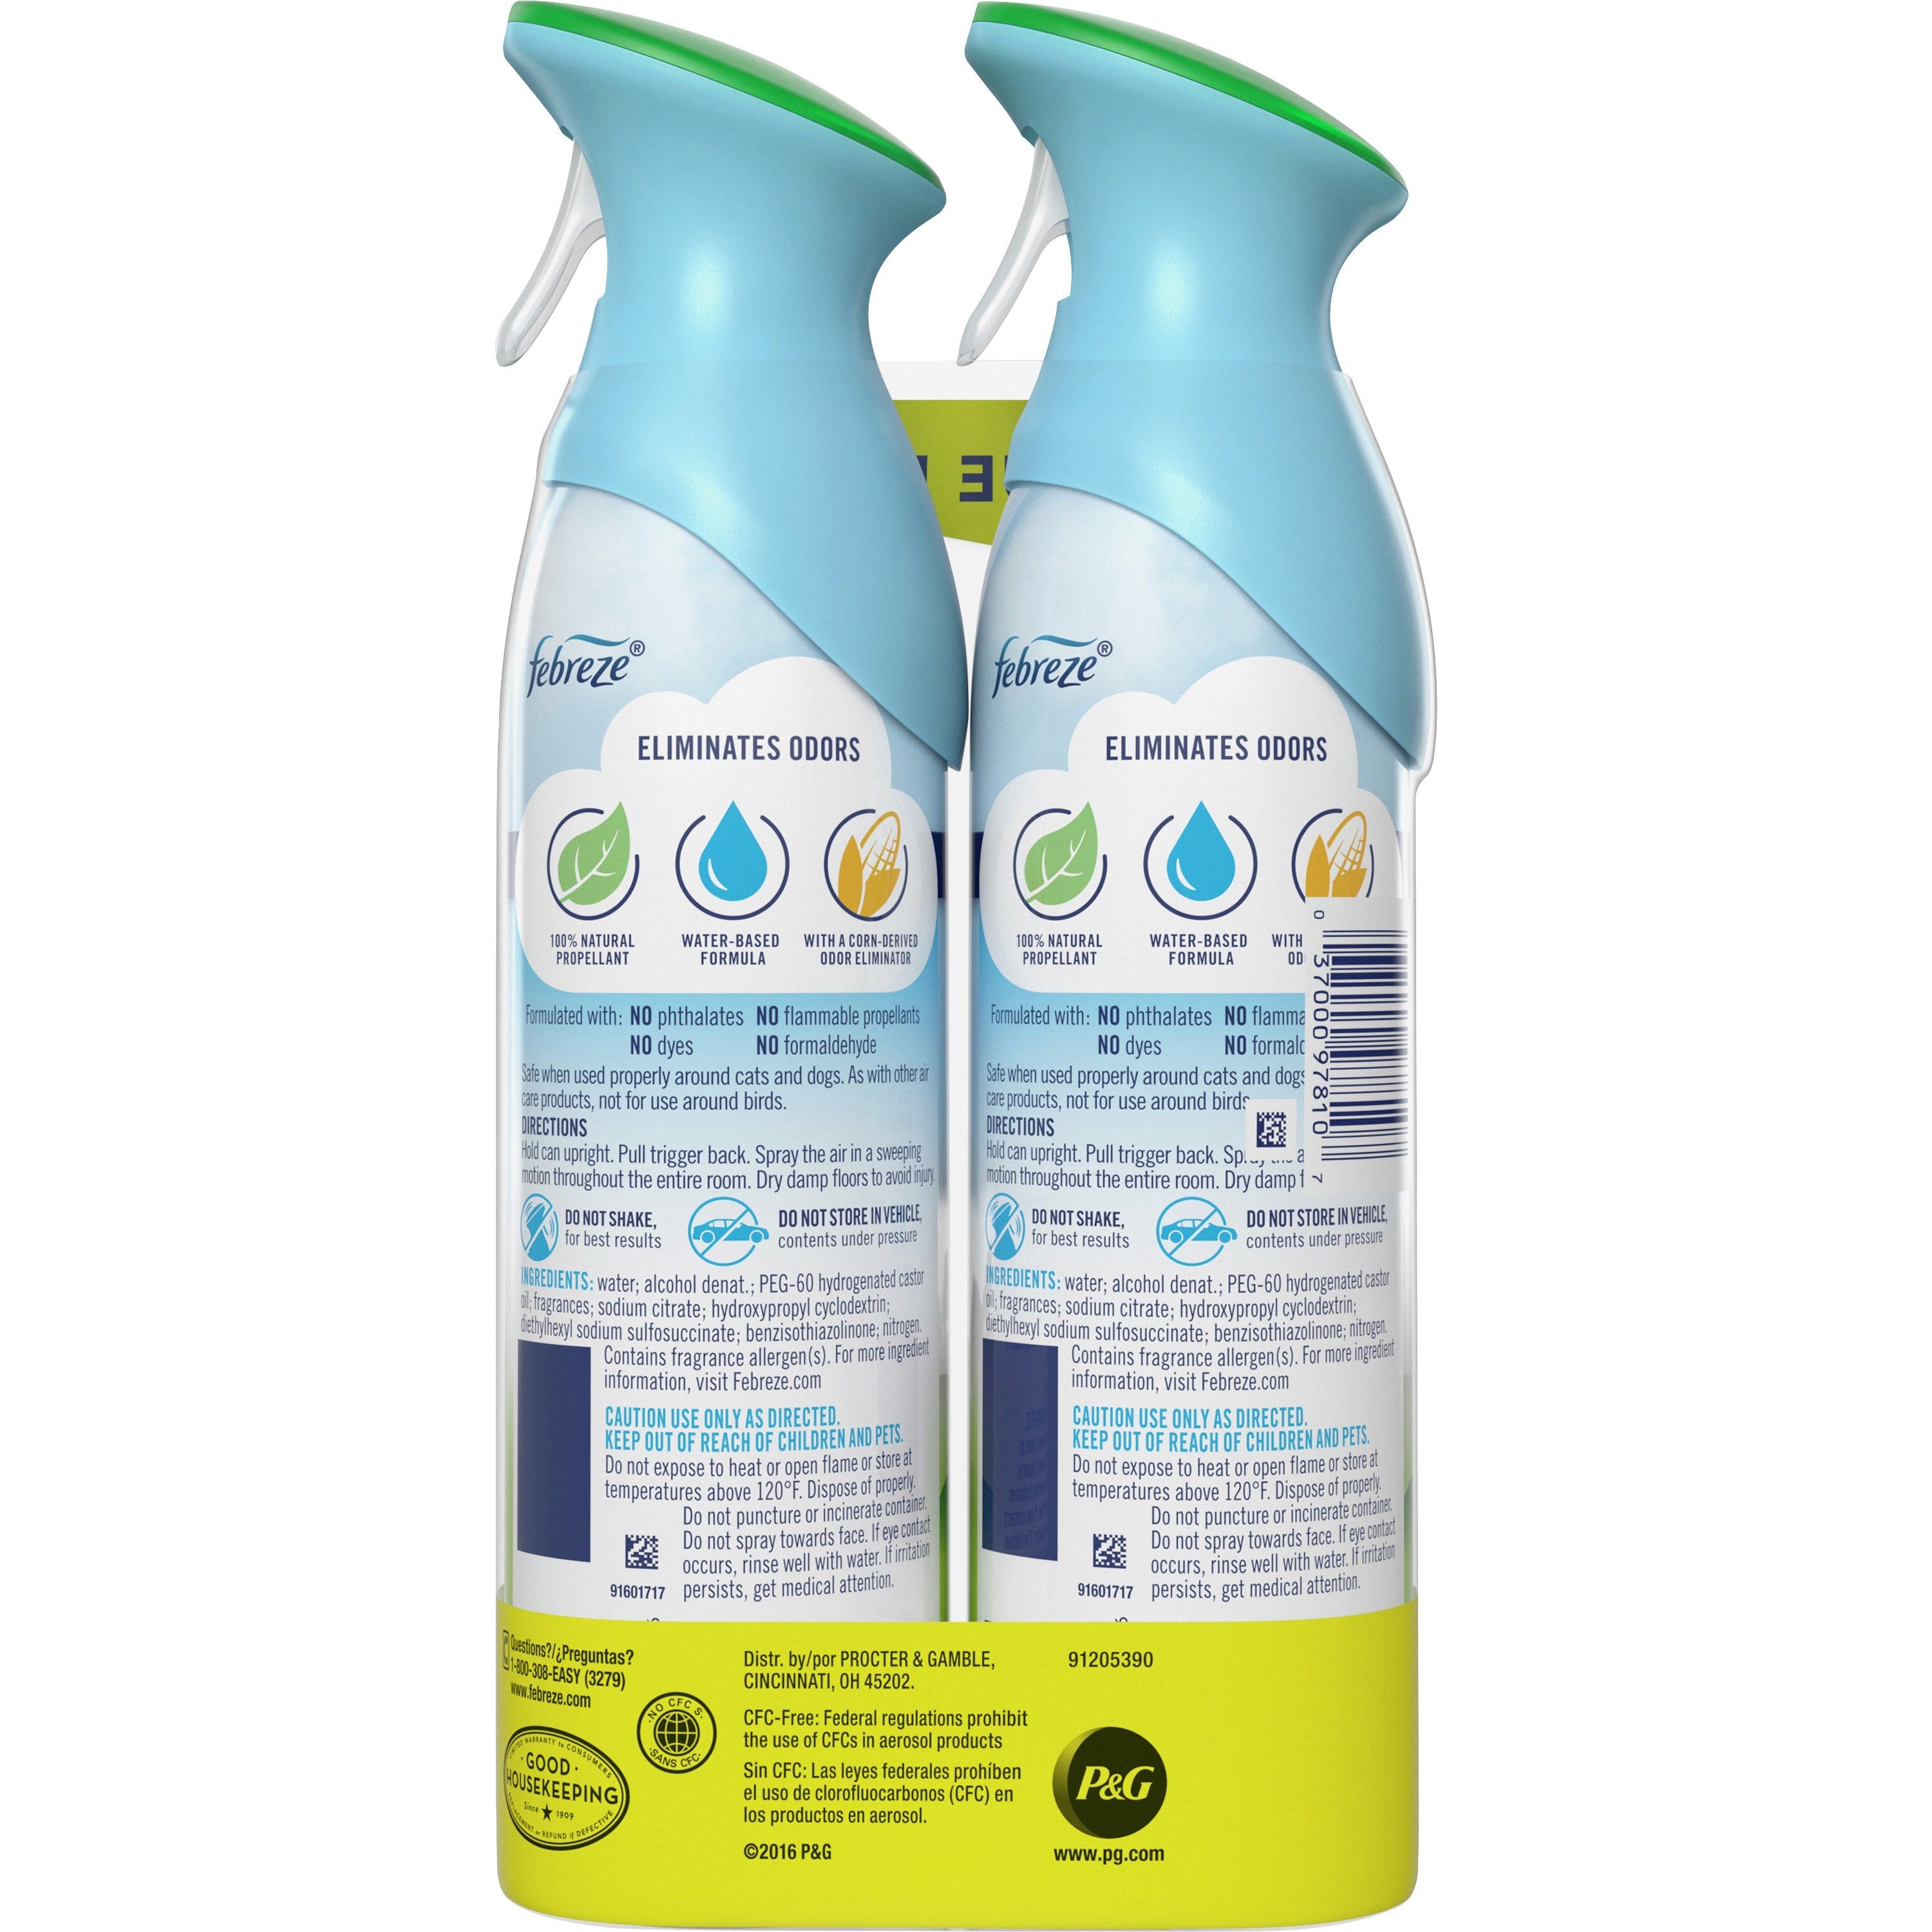 febreze-air-freshener-spray-spray-88-fl-oz-03-quart-gain-original-12-carton-odor-neutralizer-voc-free_pgc97810ct - 3